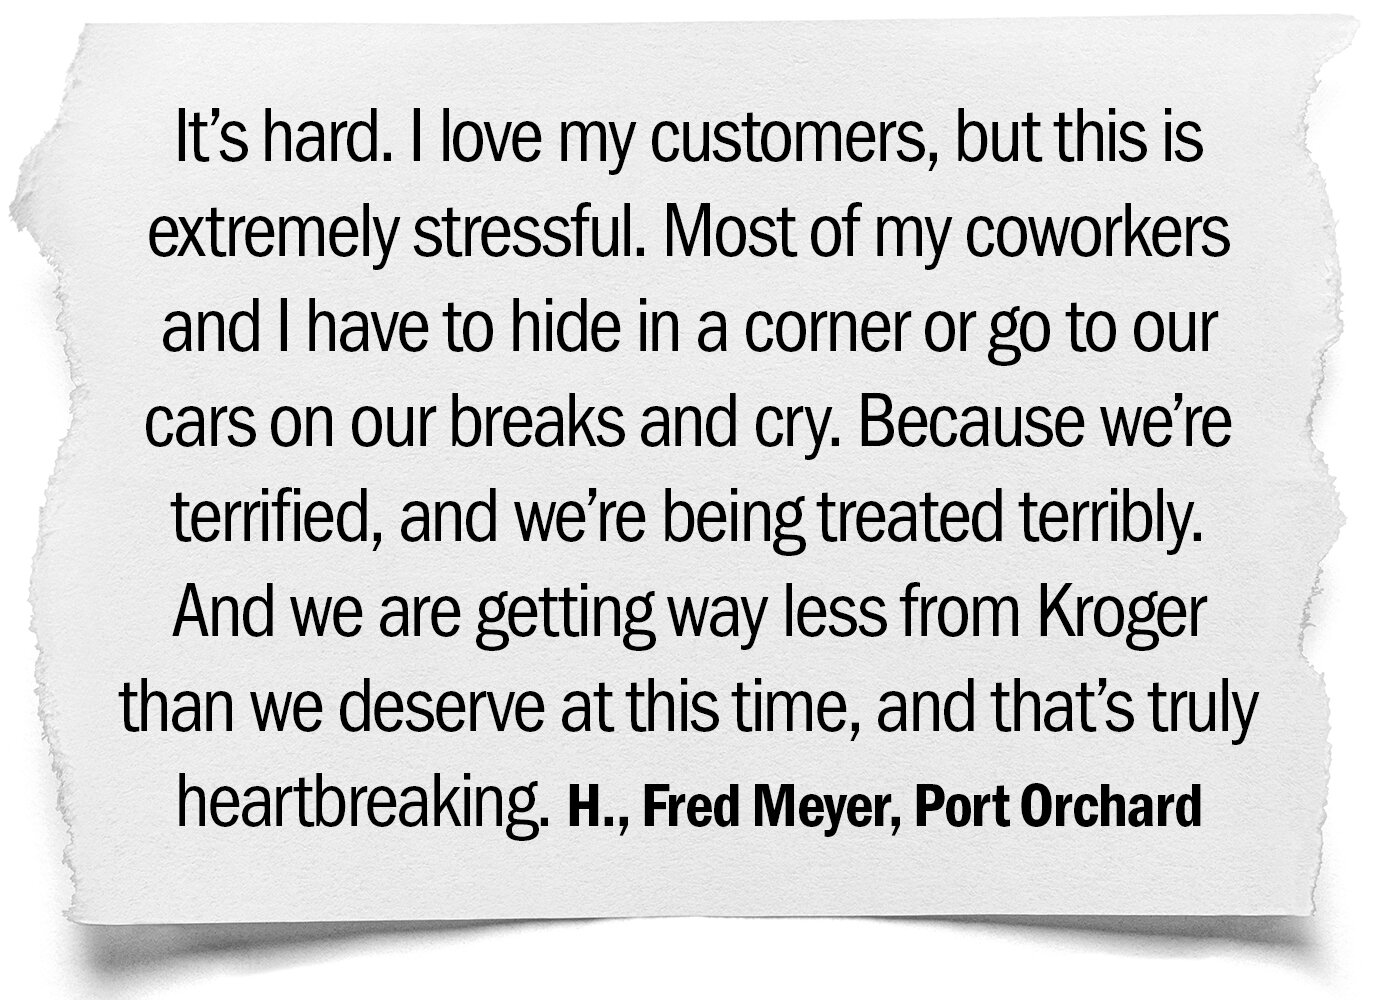 Kroger Stories Slide Show H. Fred Meyer Port Orchard.jpg